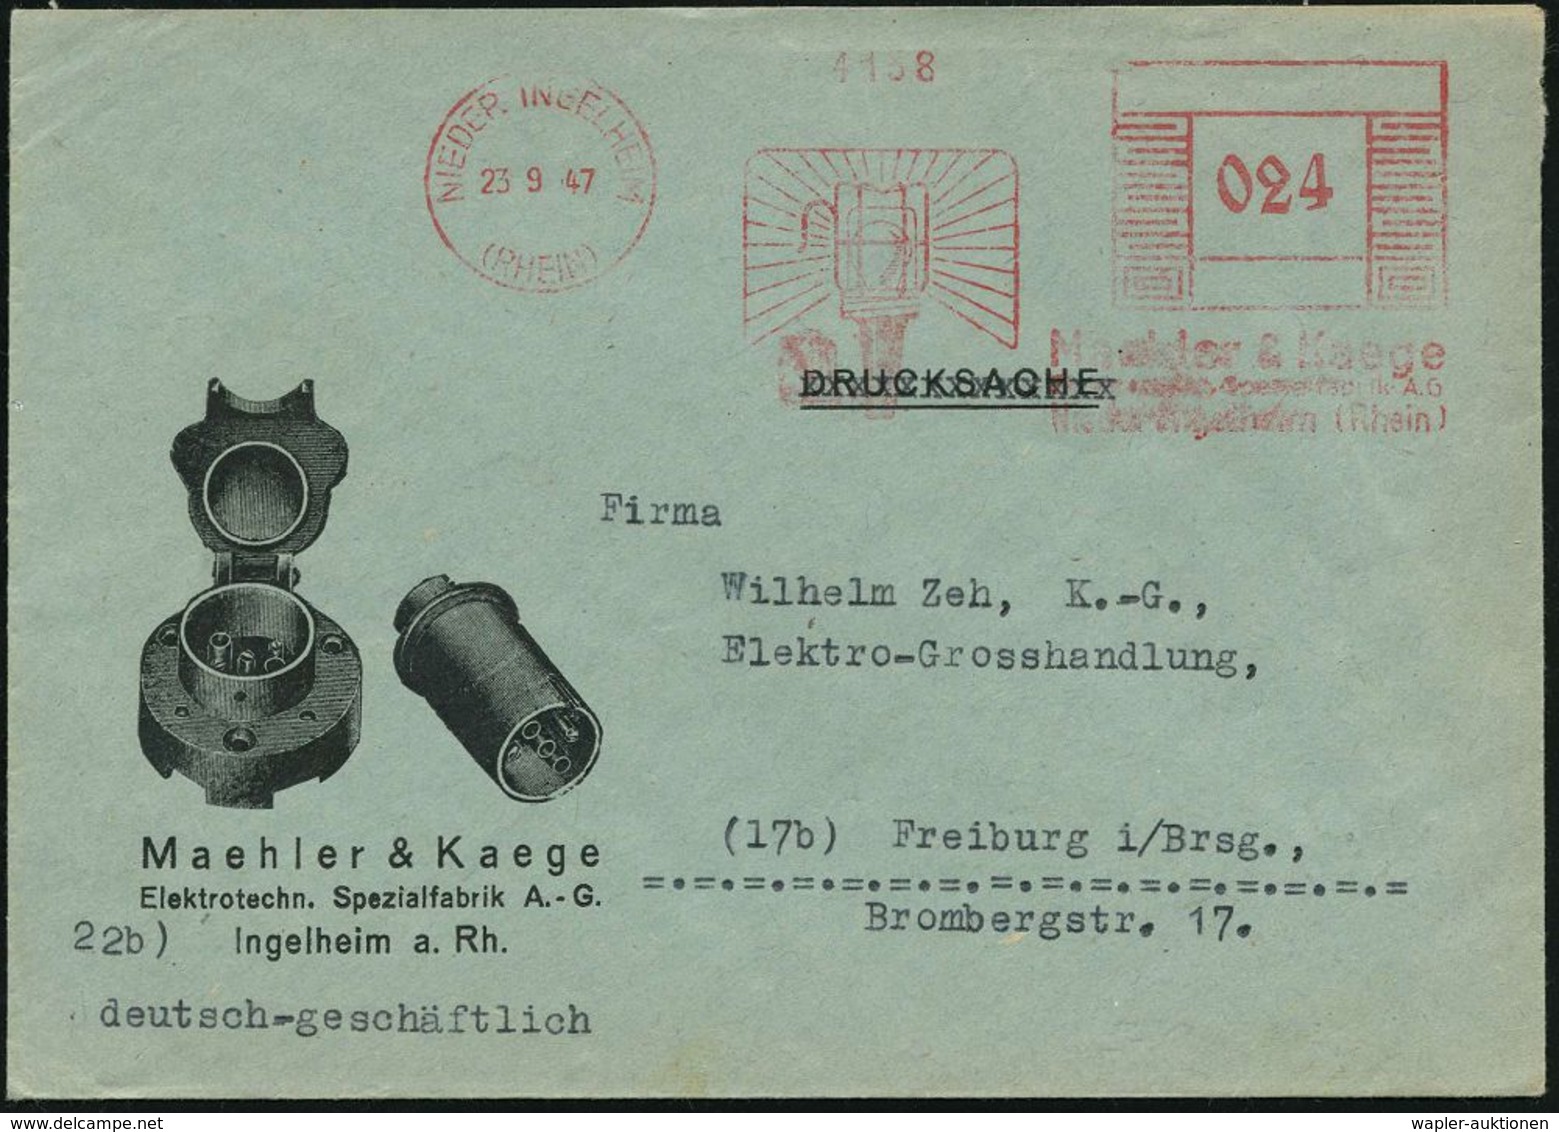 ELEKTRISCHE APPARATE & MASCHINEN : NIEDER INGELHEIM/ (RHEIN)/ Maehler & Kaege.. 1947 (23.9.) Aptierter AFS "Mäanderrecht - Electricité